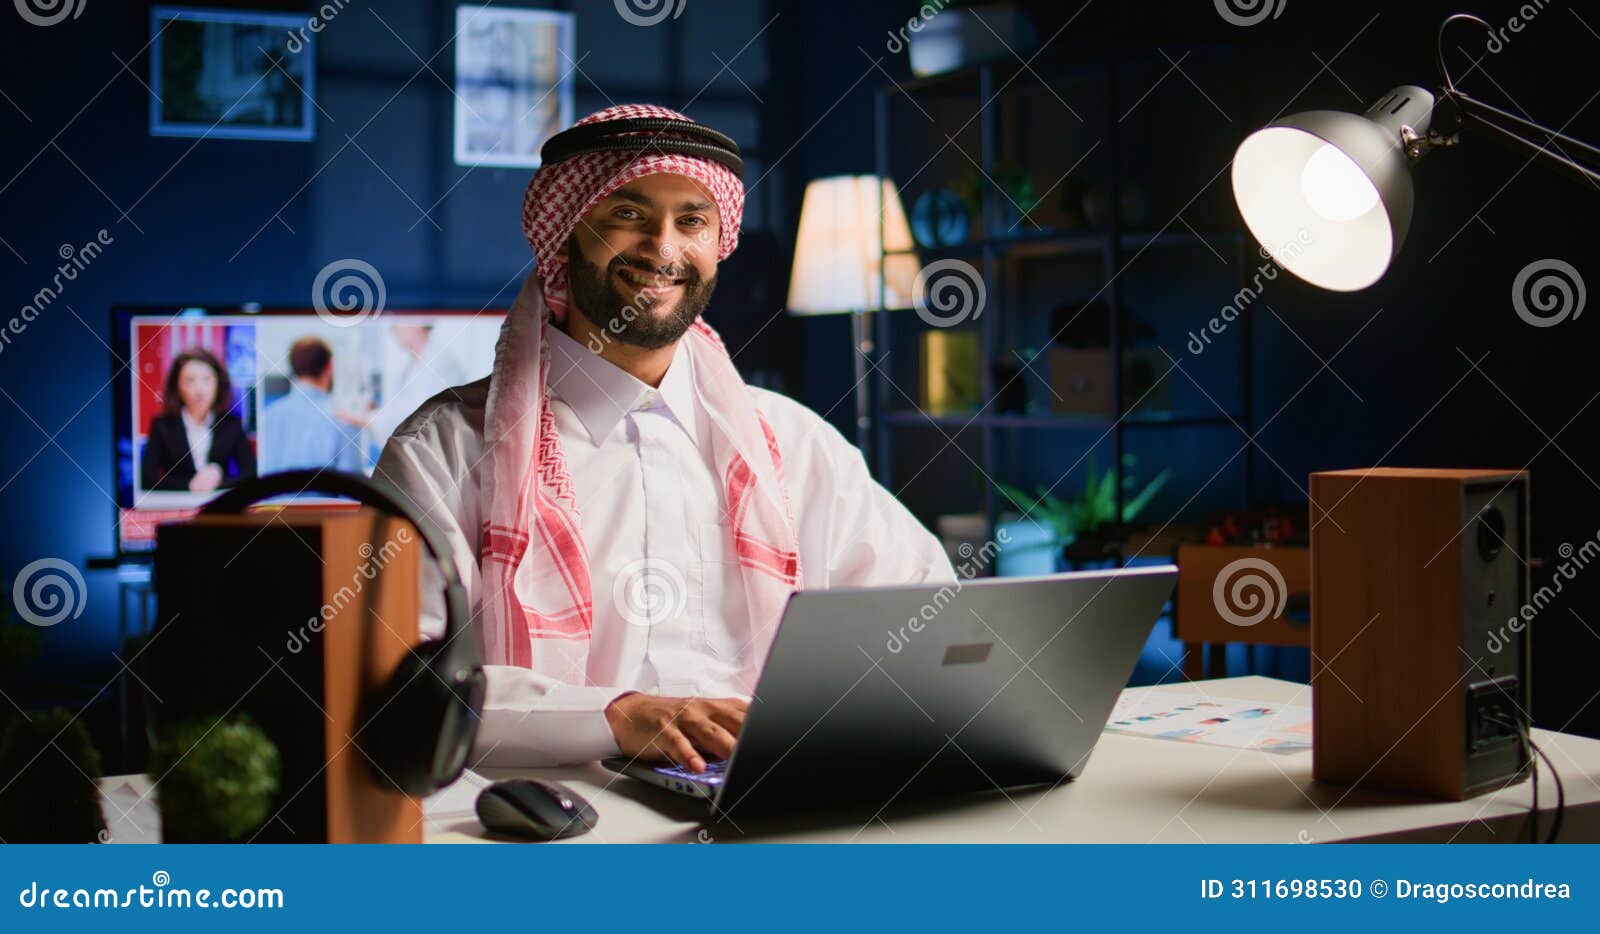 teleworker typing on laptop